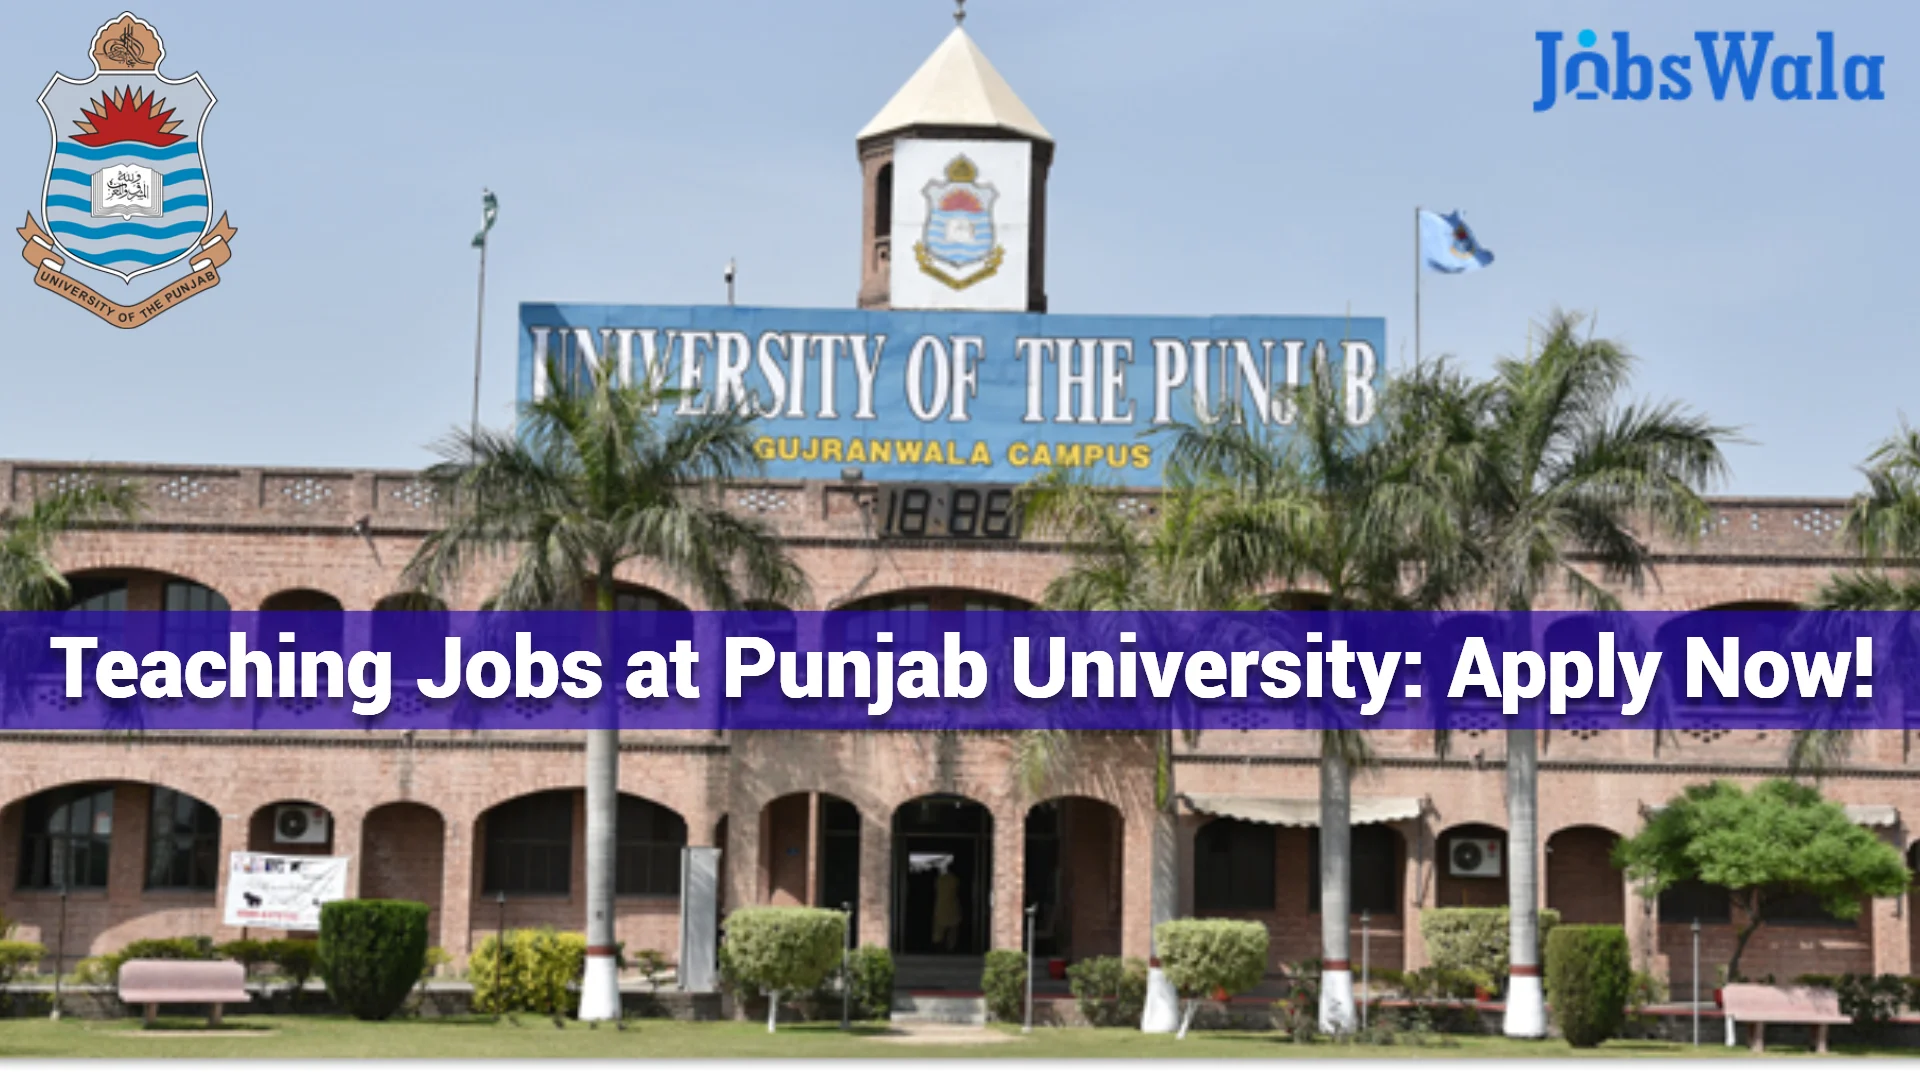 Teaching Jobs at Punjab University: Apply Now!